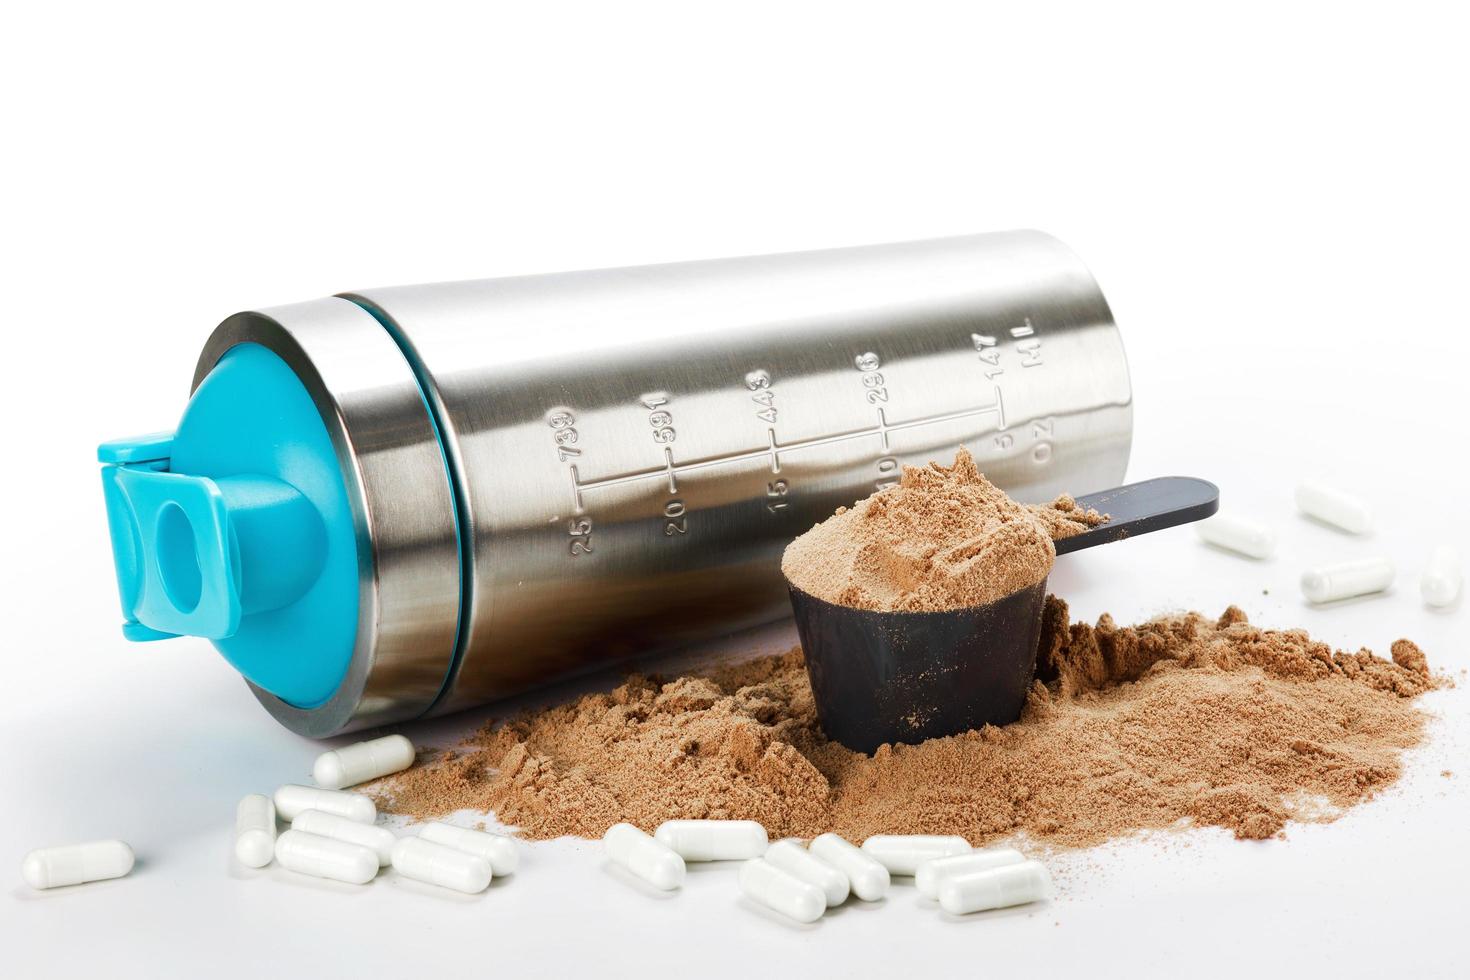 shaker, cuillère avec poudre de protéines et pilules photo